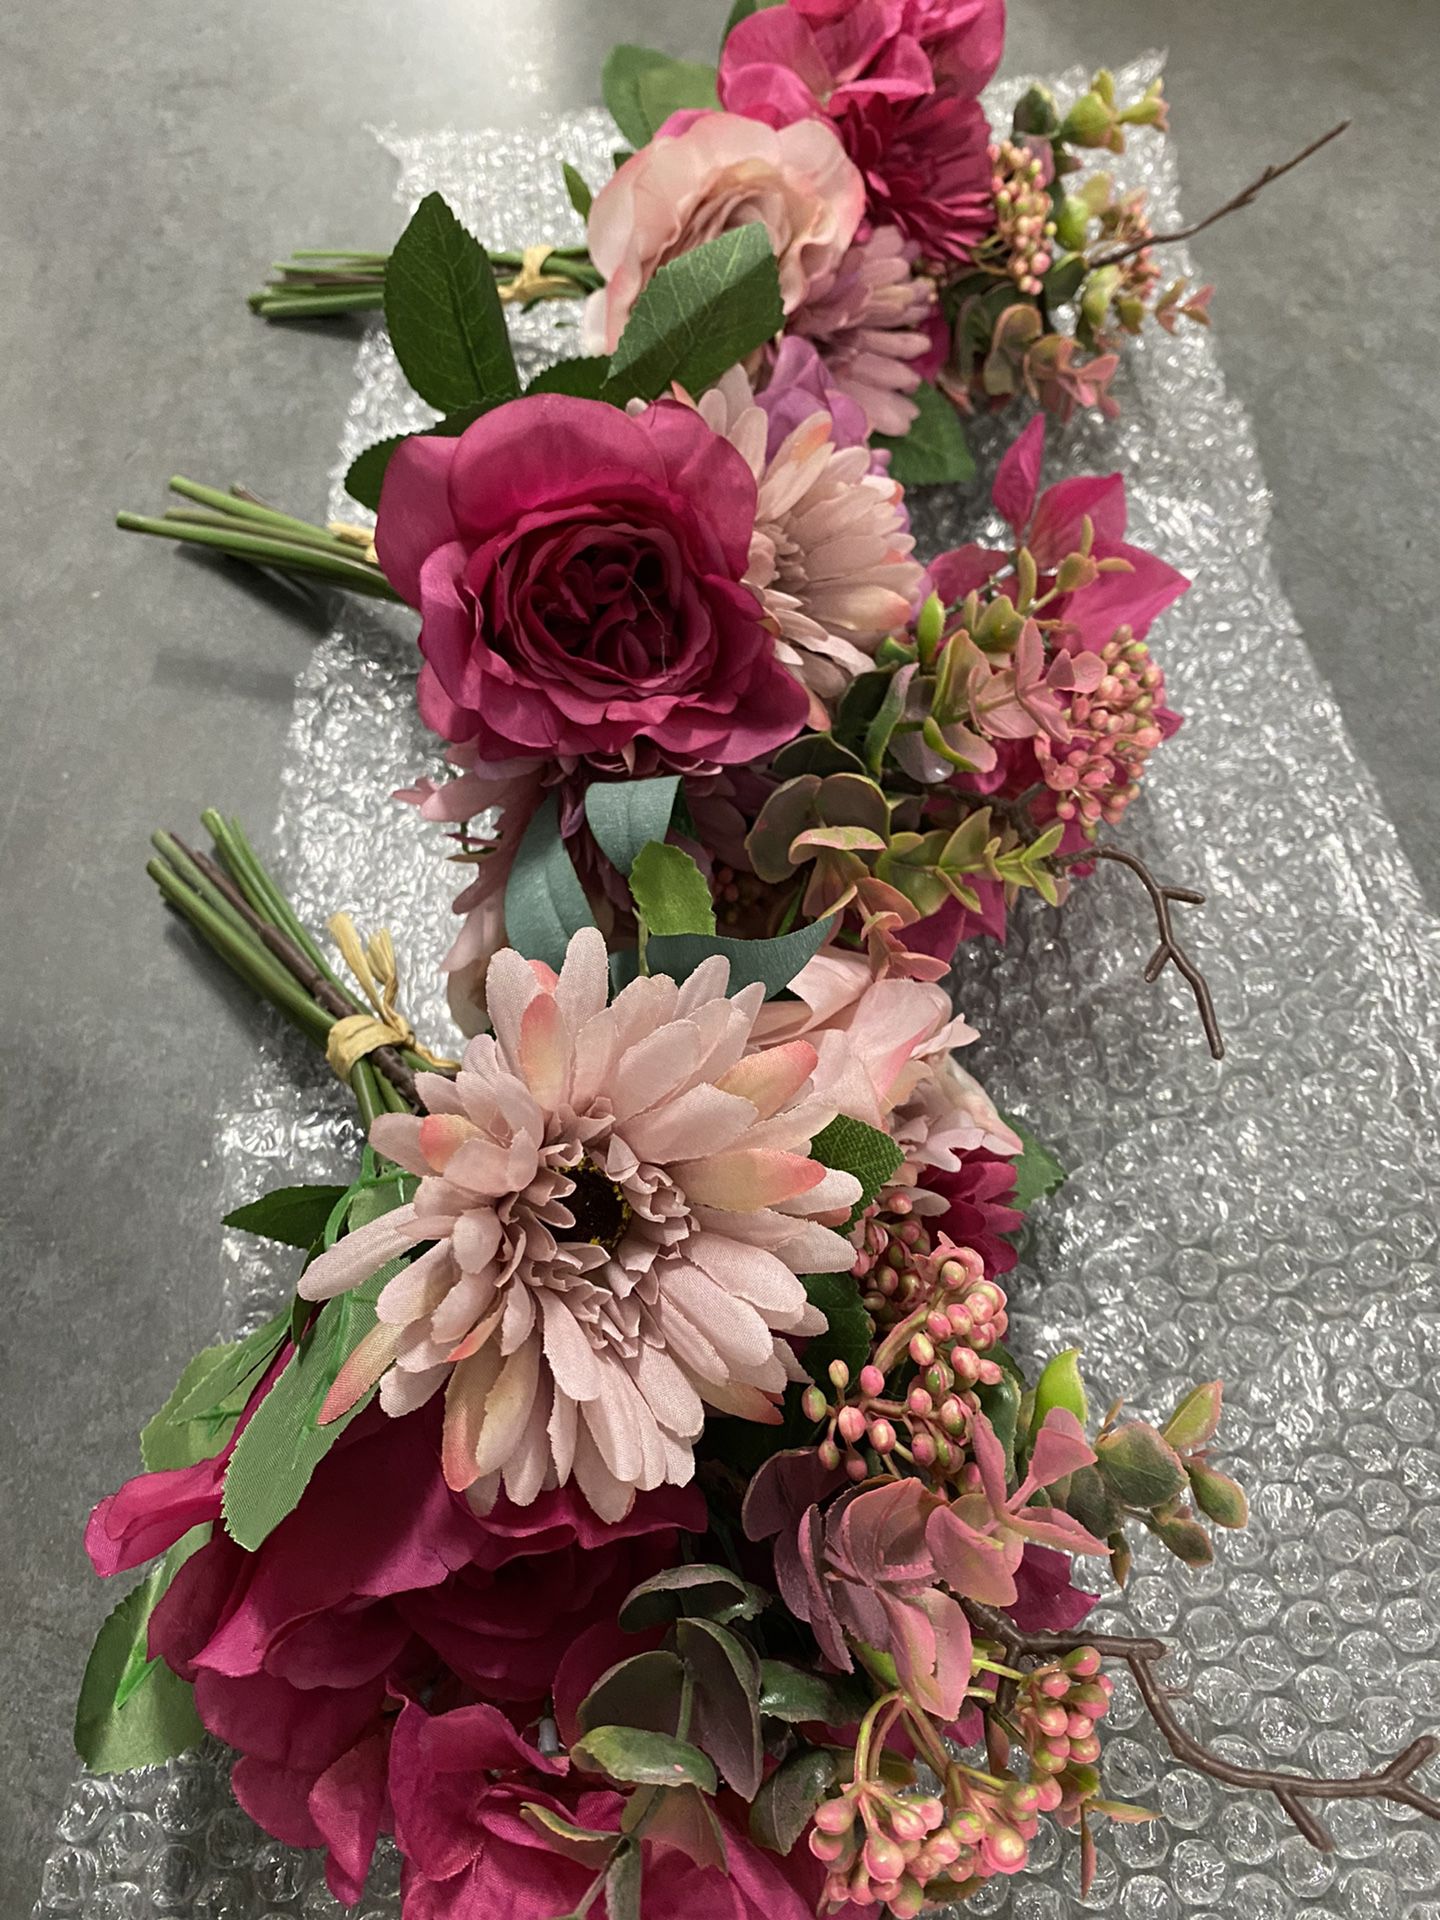 3-Bouquet Bundle Artificial Plastic Silk Flowers for Home Decor Weddings Events